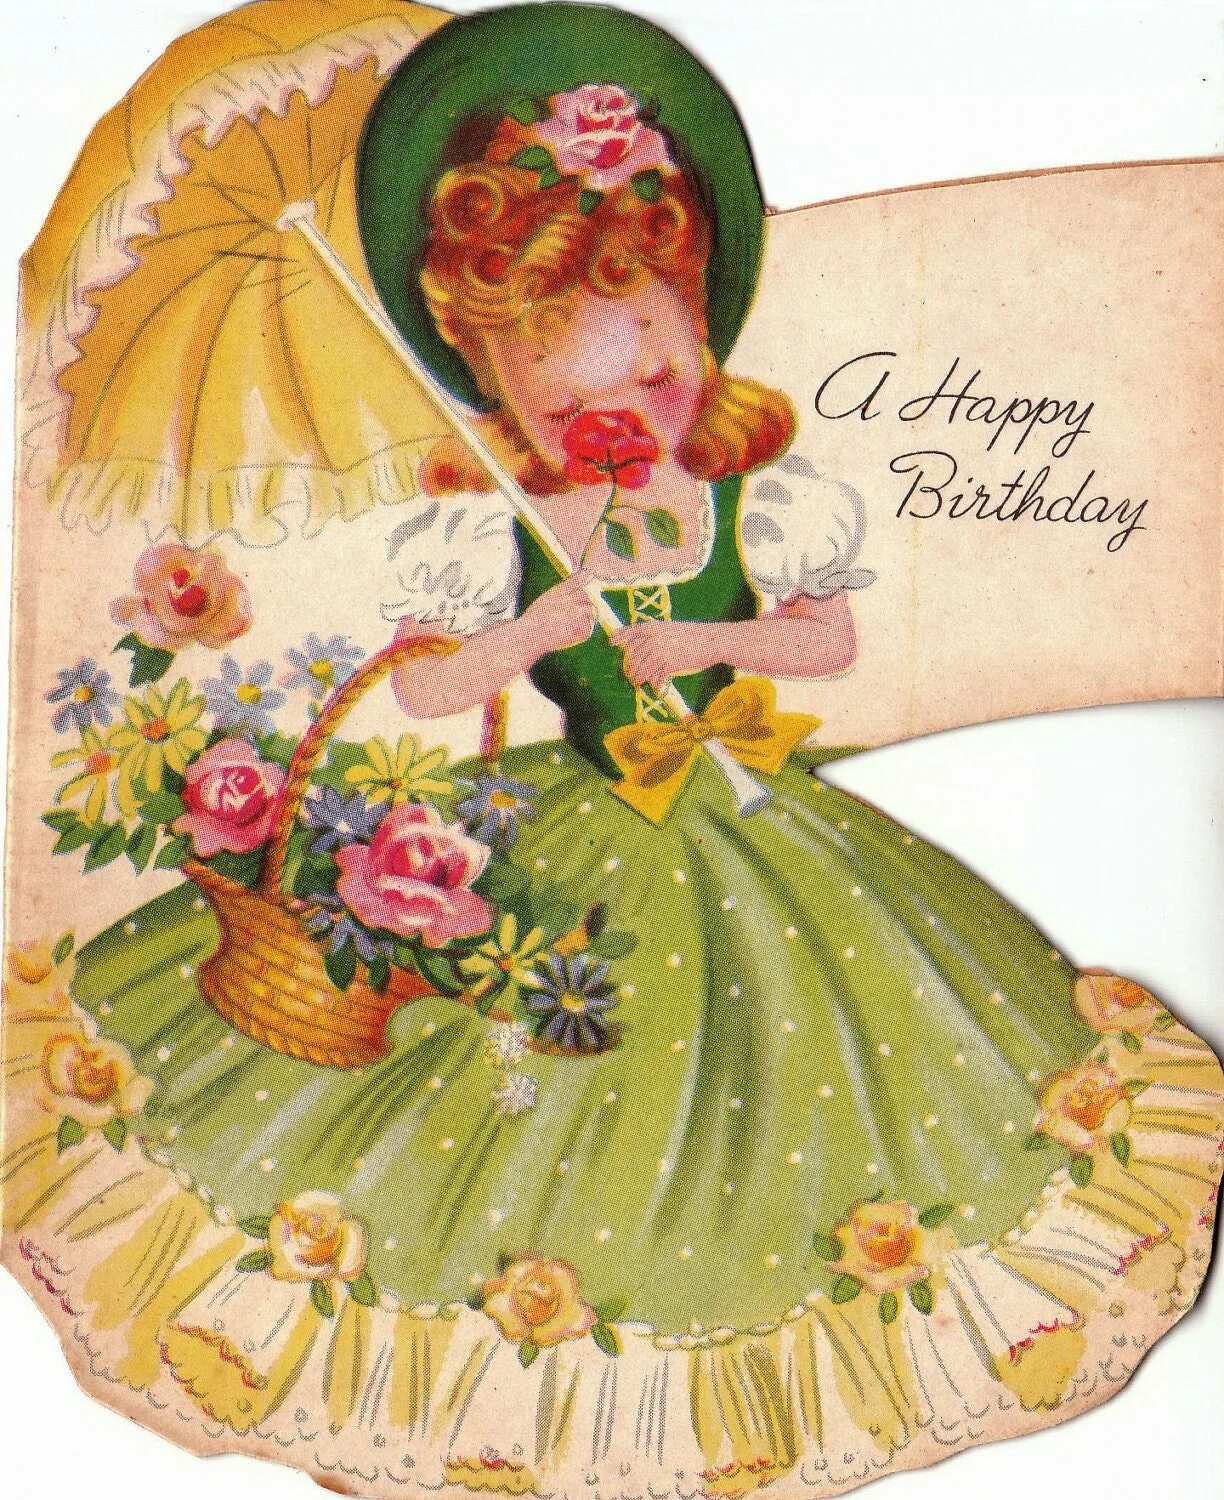 Старинные открытки с днем рождения. С днём рождения ретро открытки. Винтажная открытка с днем рождения. Стпринные открытки с днем рождения.